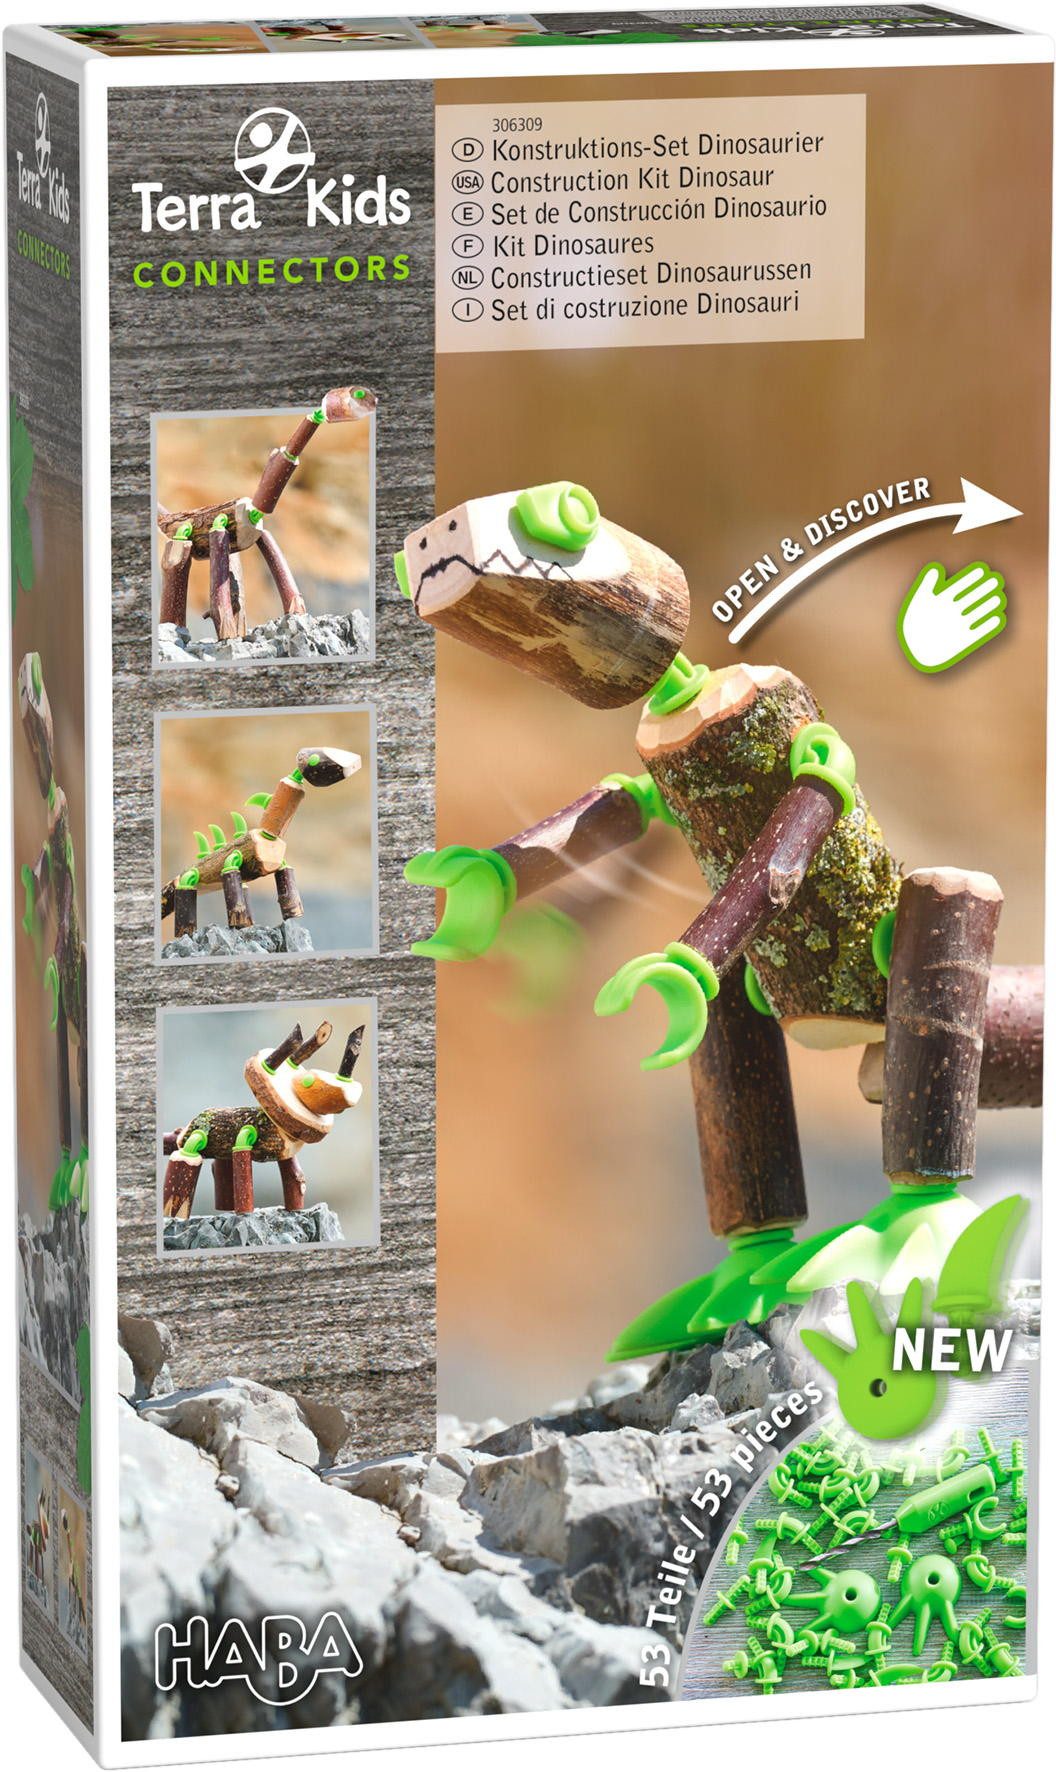 Haba Outdoor-Spielzeug Outdoor Terra Kids Connectors Konstruktions Set Dinosaurier 1306309001